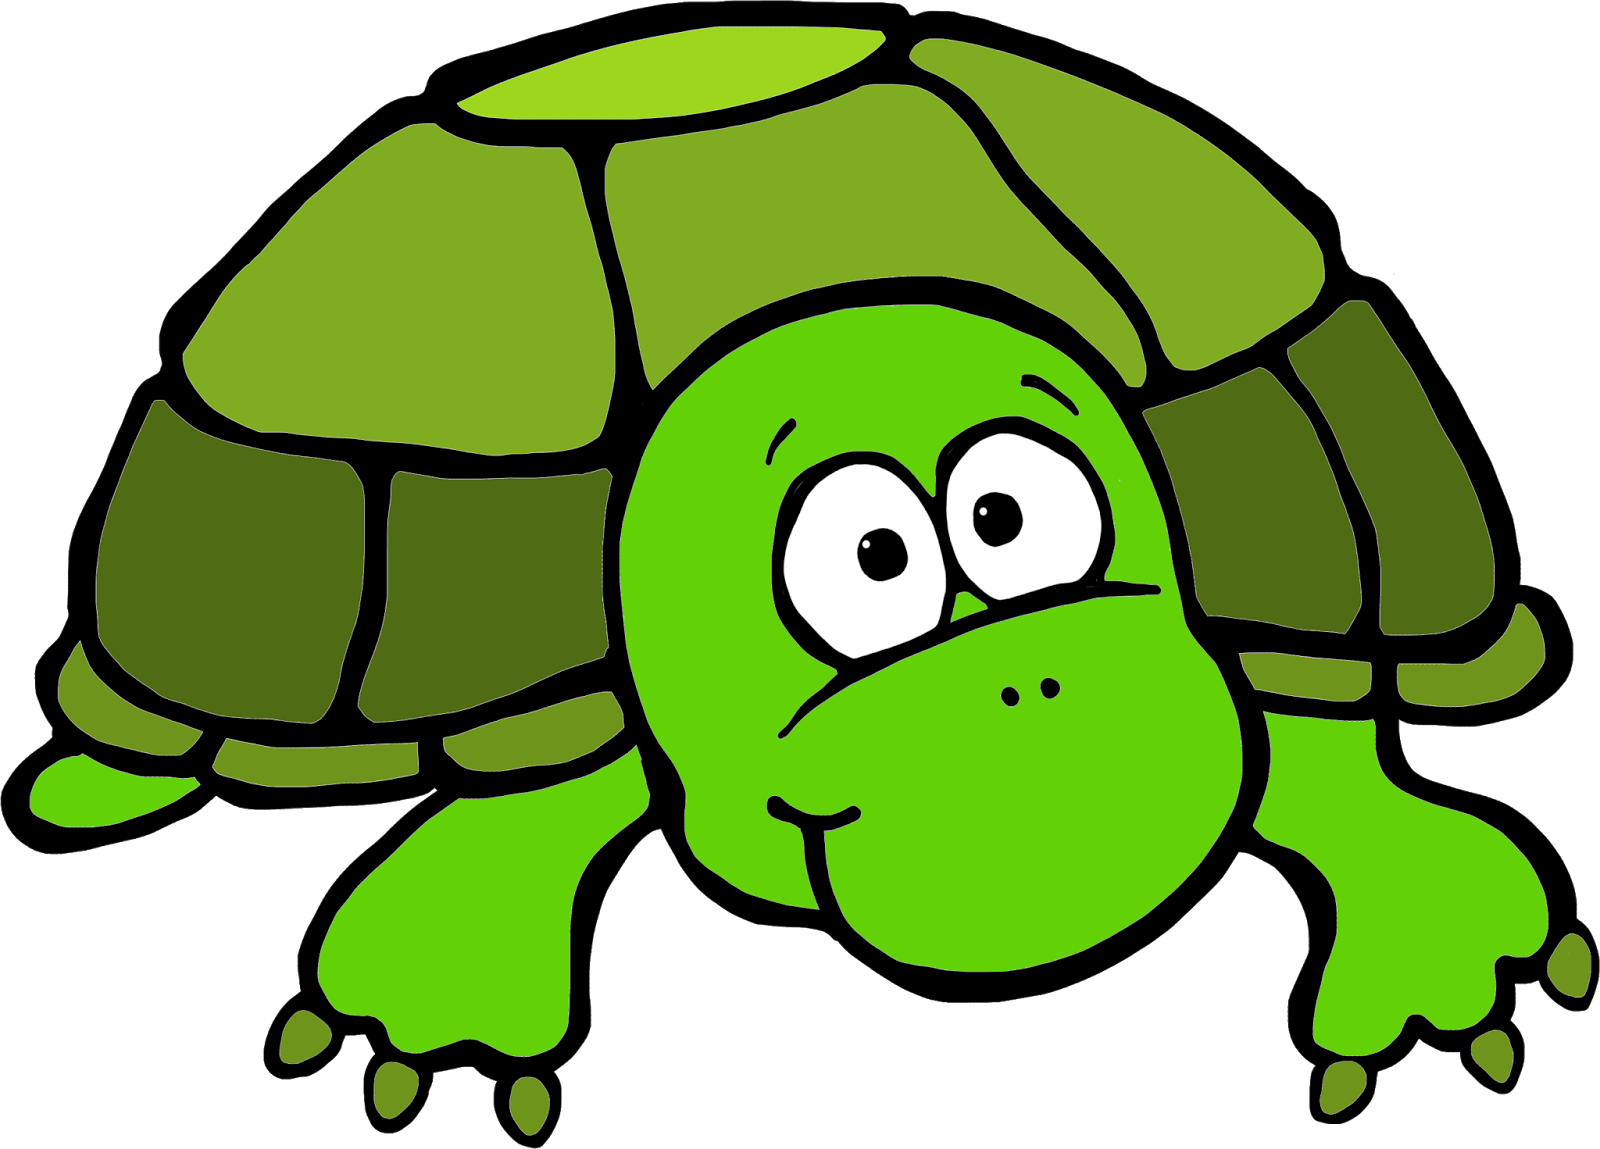 Картинка черепахи из мультика. Черепаха мультяшный. Черепаха клипарт на прозрачном фоне. Рисуем черепашку. Черепаха картинка для детей.